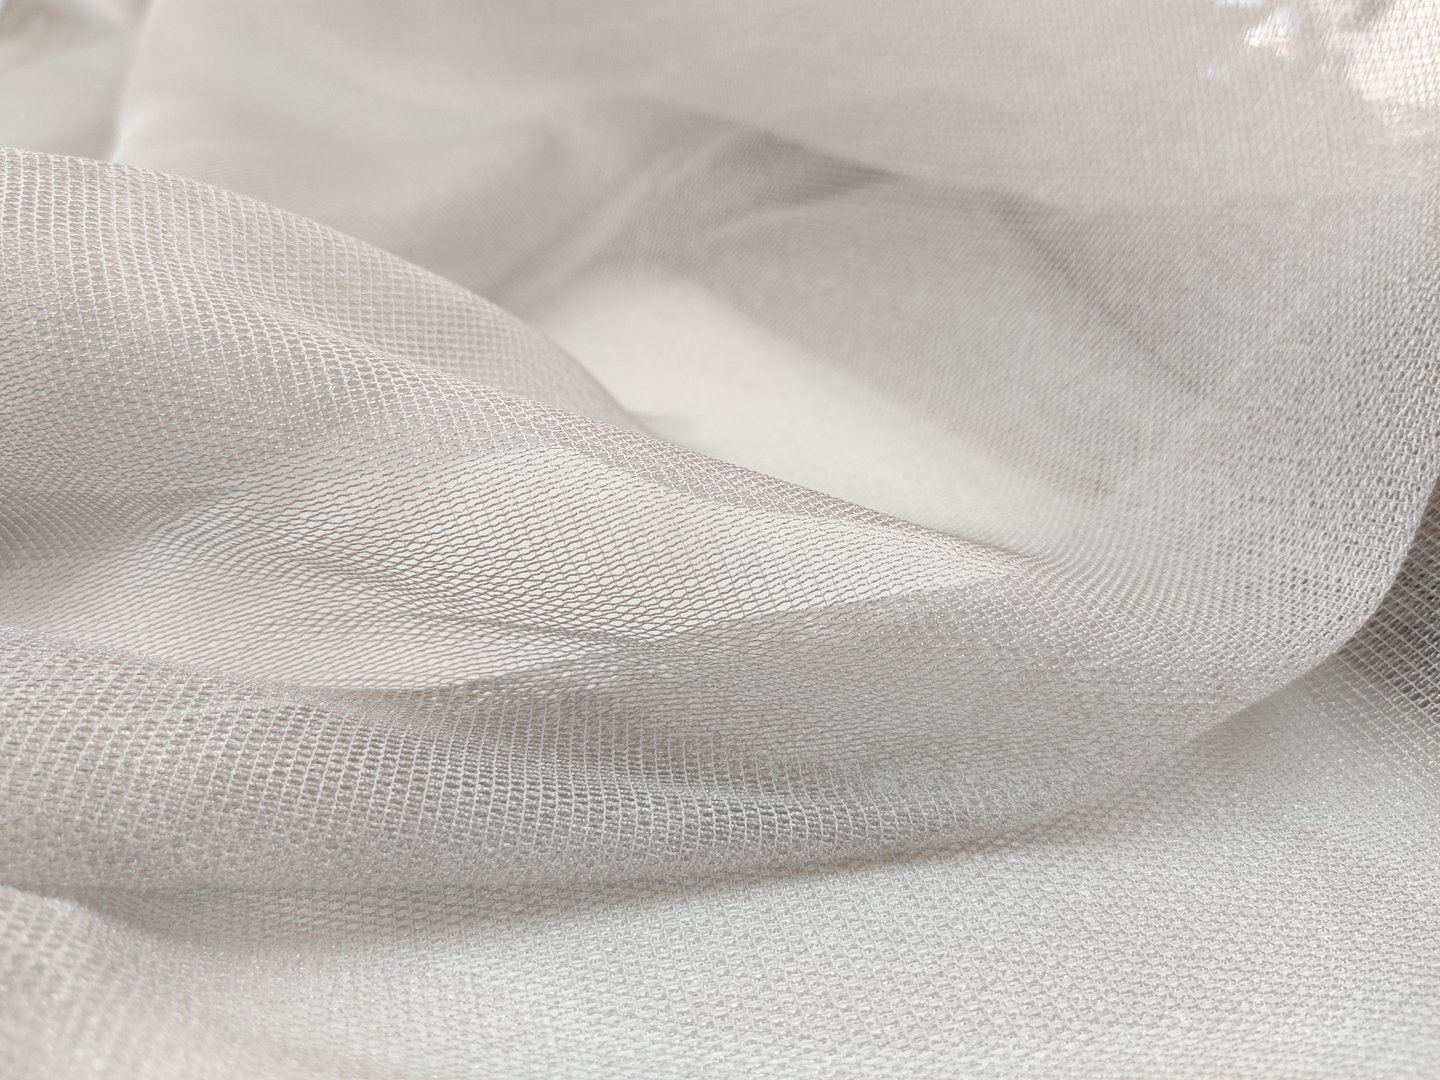 Gray thin curtain fabric